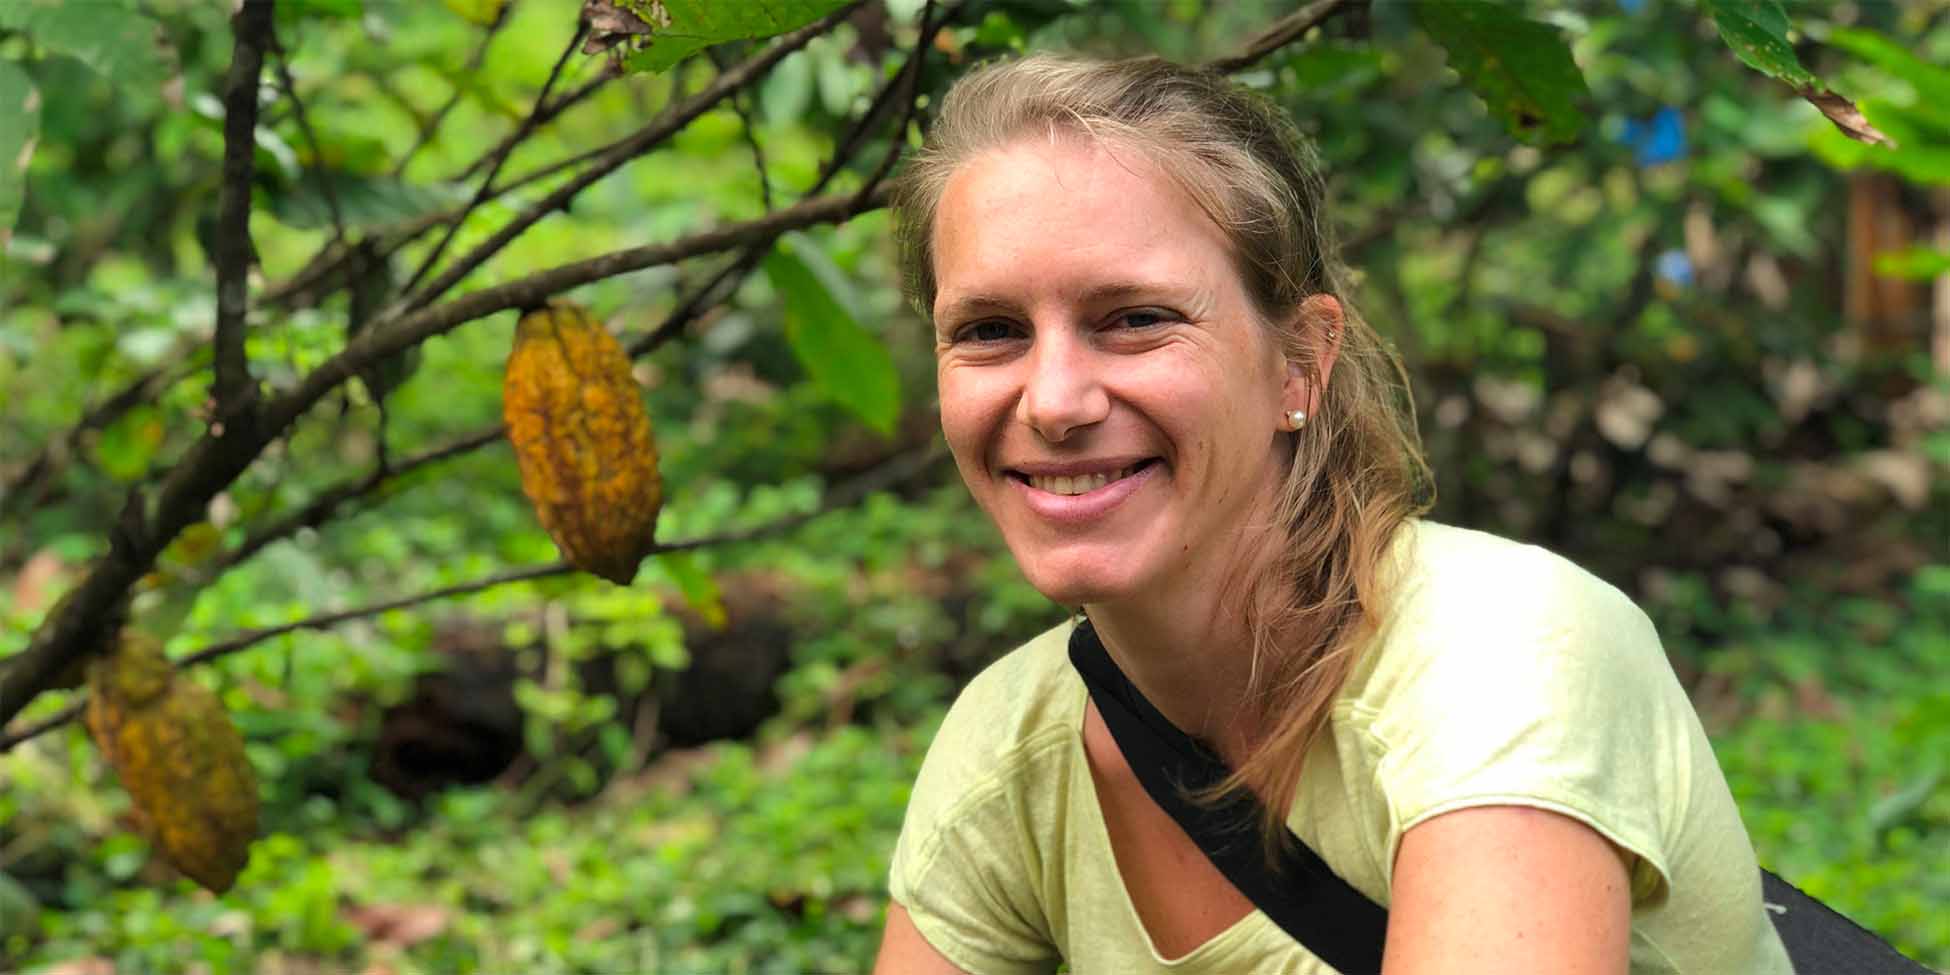 Cacao de spécialité : rencontre avec Katrien Delat, sourceuse